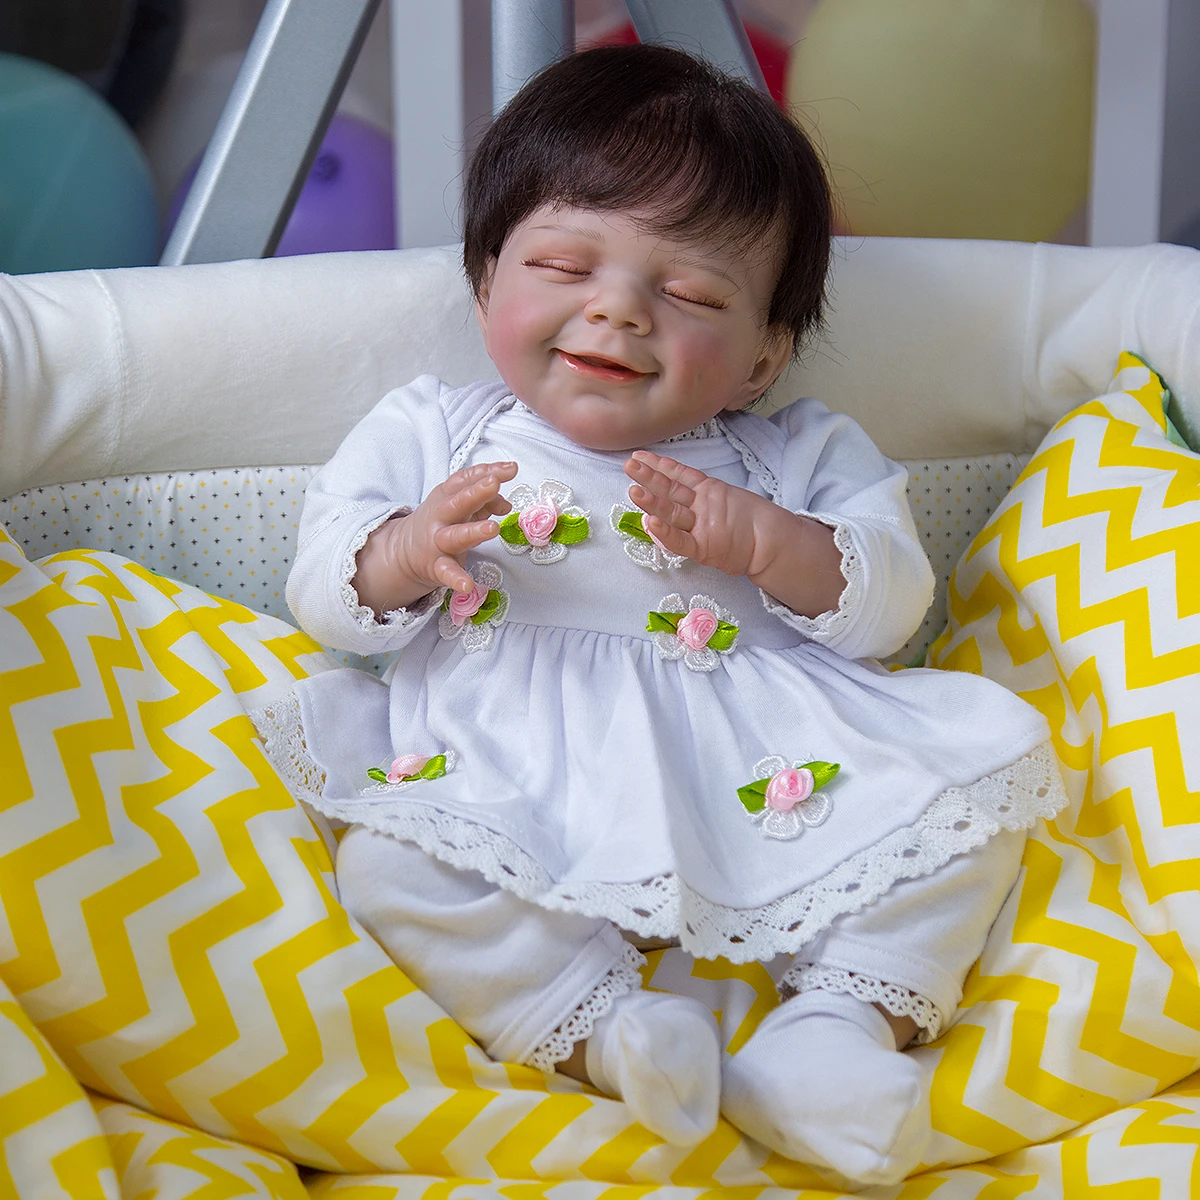 

Кукла новорожденная, 50 см, из ткани, с волосами